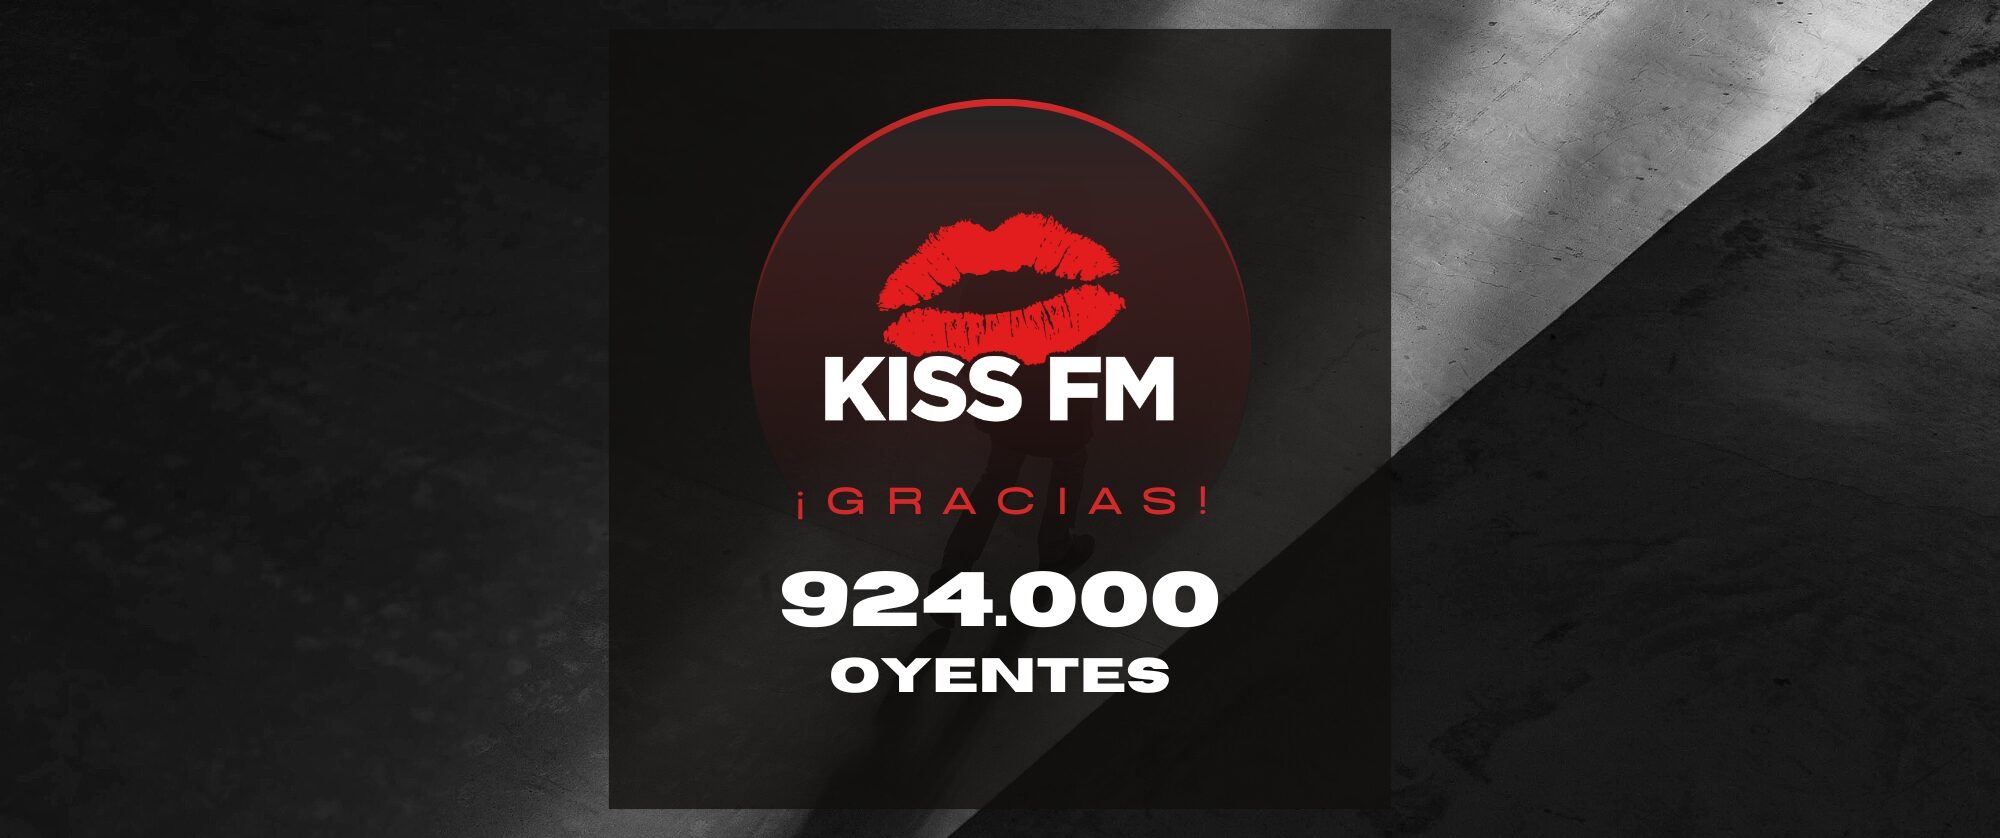 dedo índice Arroyo Cámara KISS FM ESCALA HASTA LA CUARTA POSICIÓN DE LAS RADIOS MÁS ESCUCHADAS DE  ESPAÑA – KISS FM